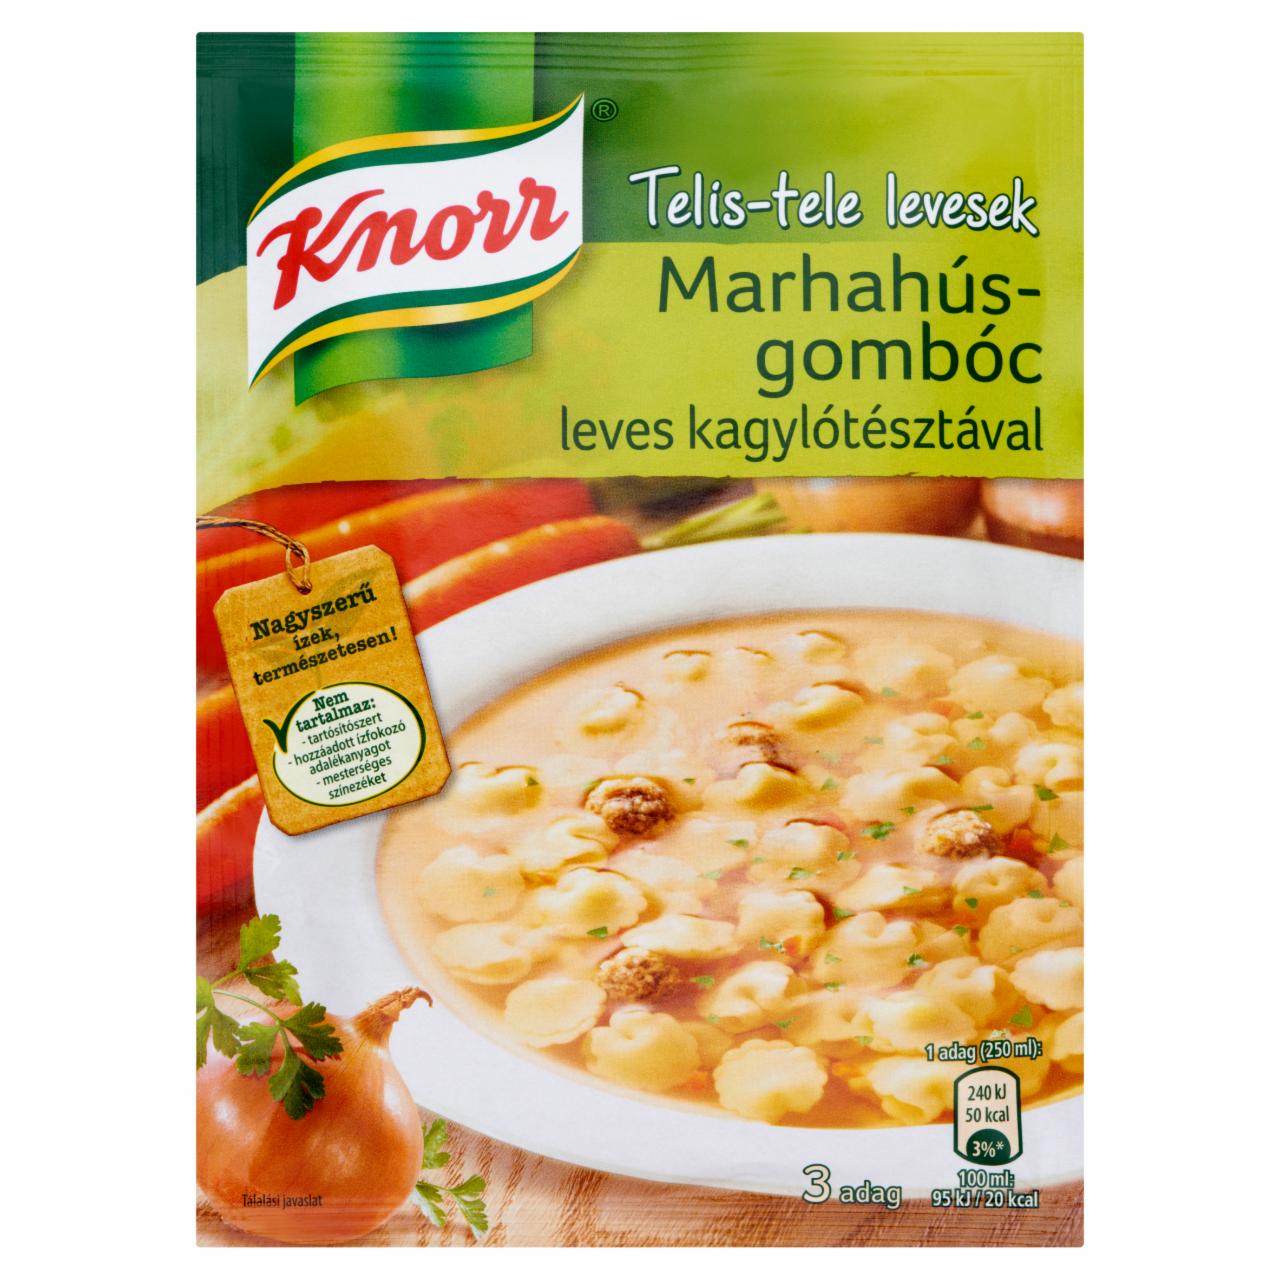 Képek - Knorr Telis-tele levesek marhahúsgombóc leves kagylótésztával 48 g